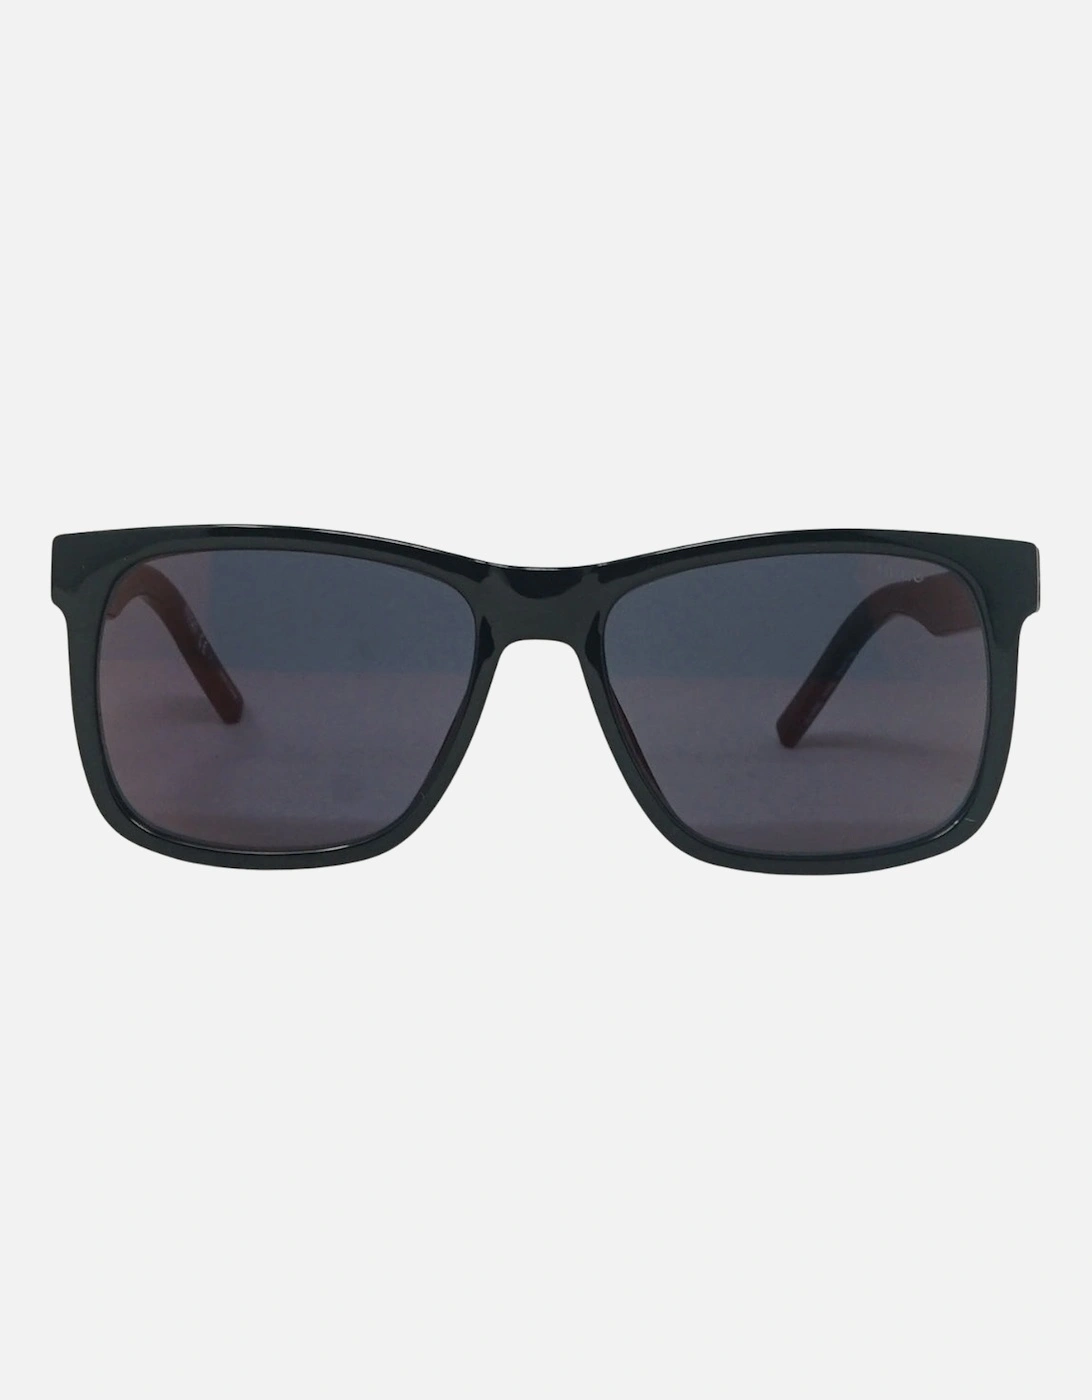 HG1068 0807 AO Black Sunglasses, 4 of 3